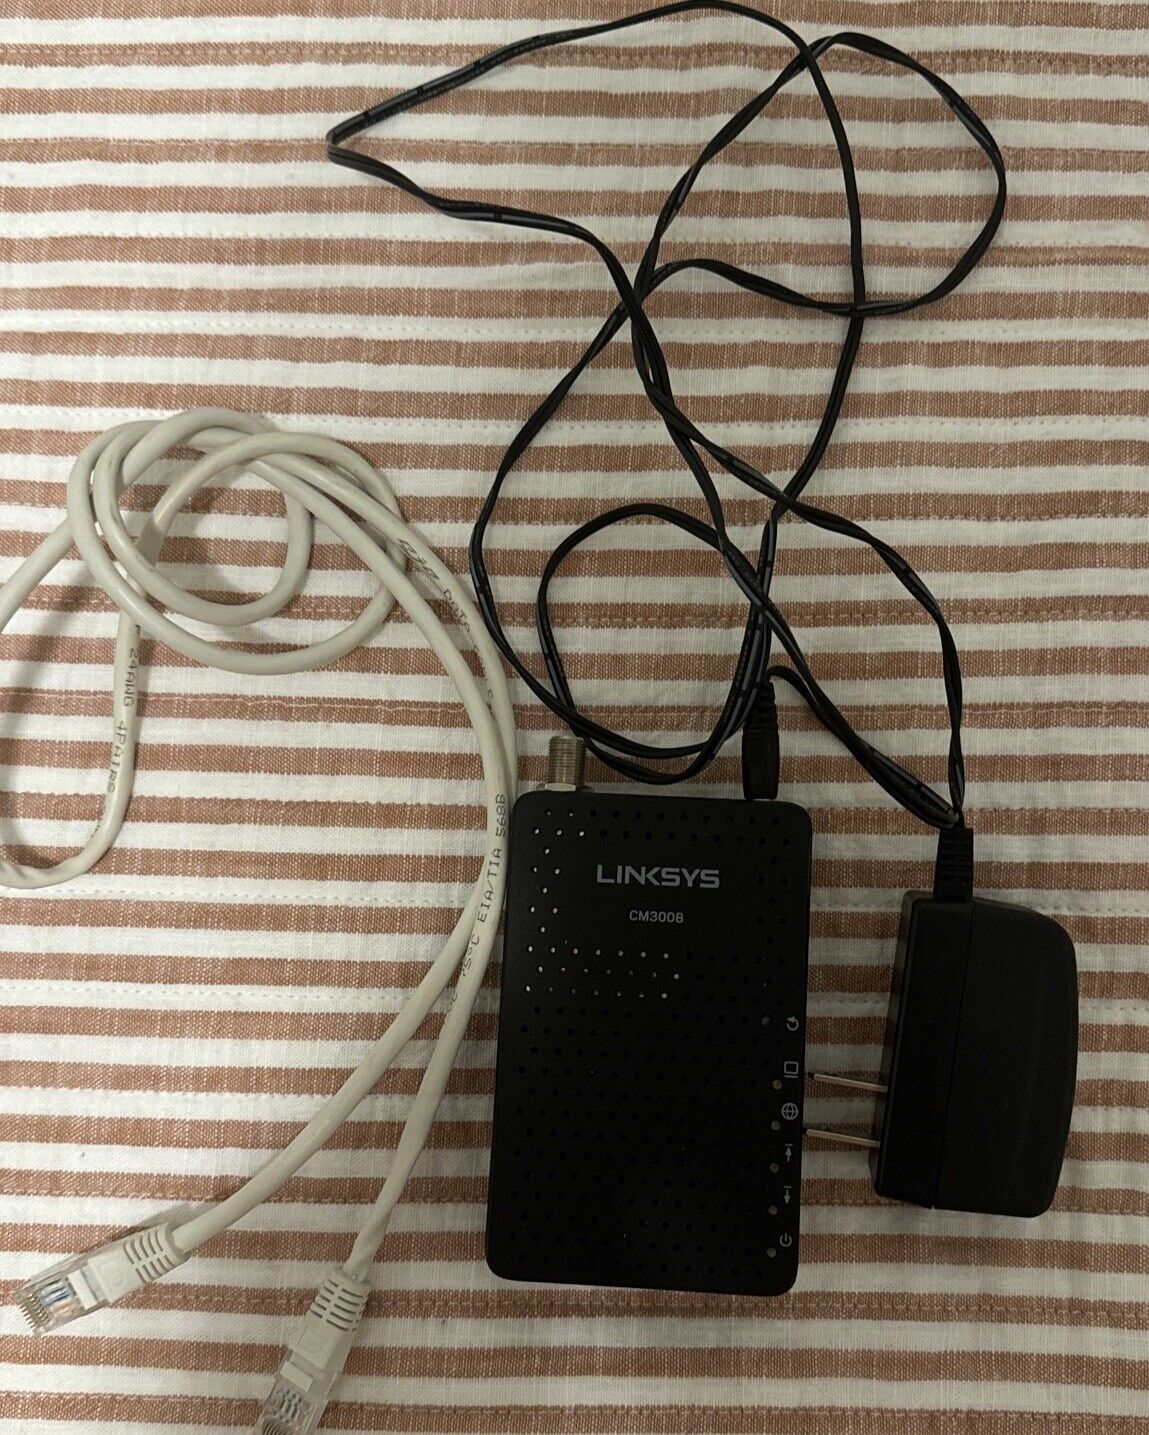 LINKSYS CM3008 DOCSIS 3.0 Cable Modem (8x4 Bonded Channels) OEM